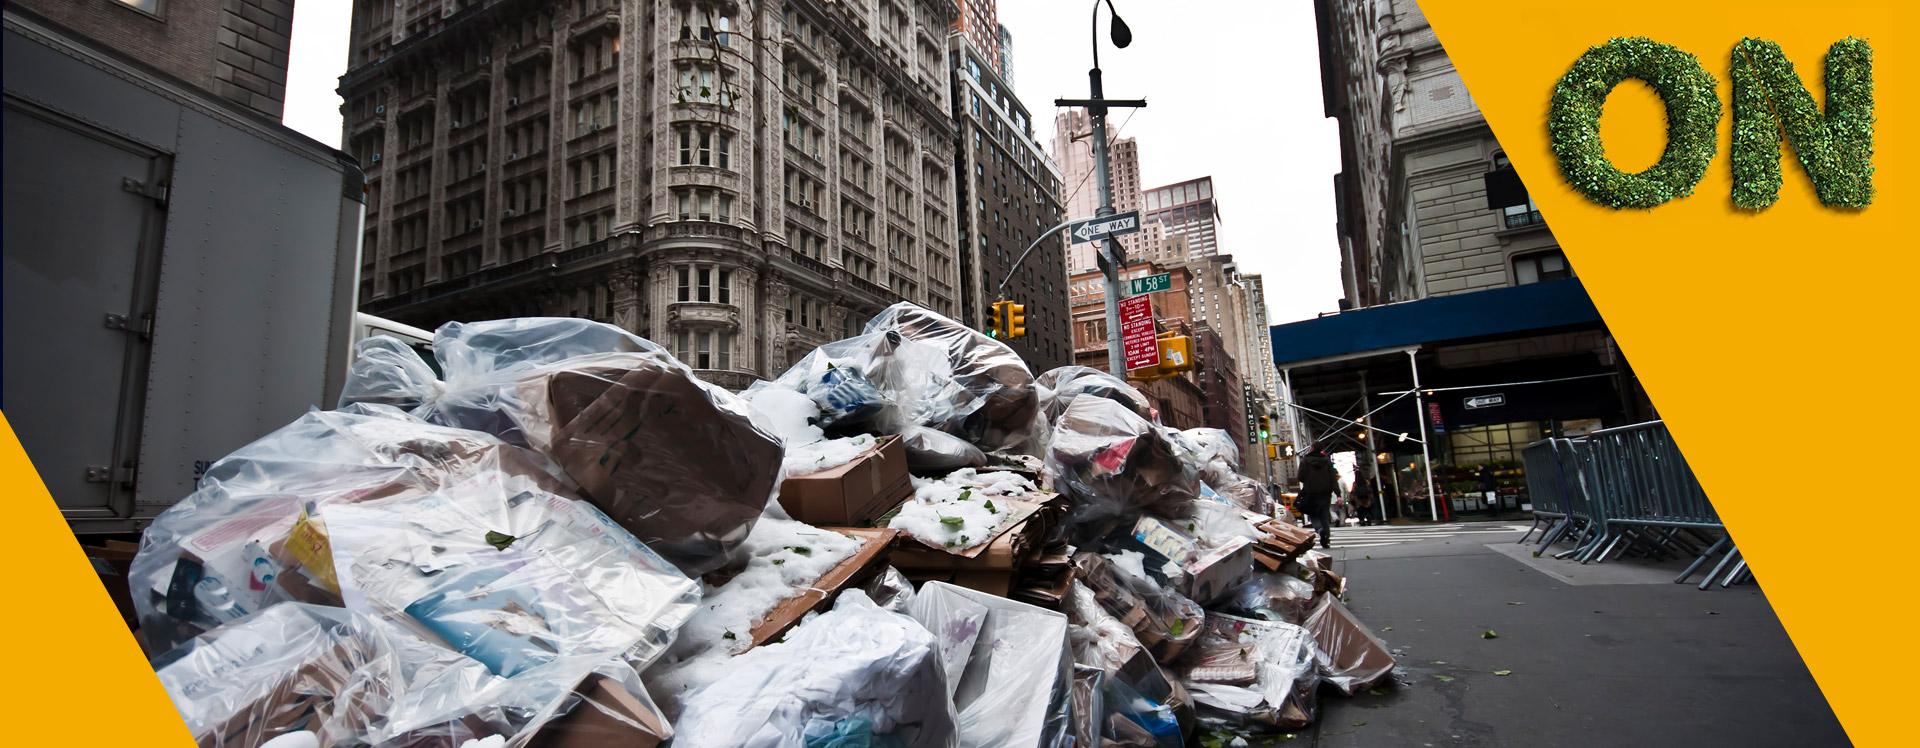 Cidades pelo mundo trabalham juntas para diminuir o lixo